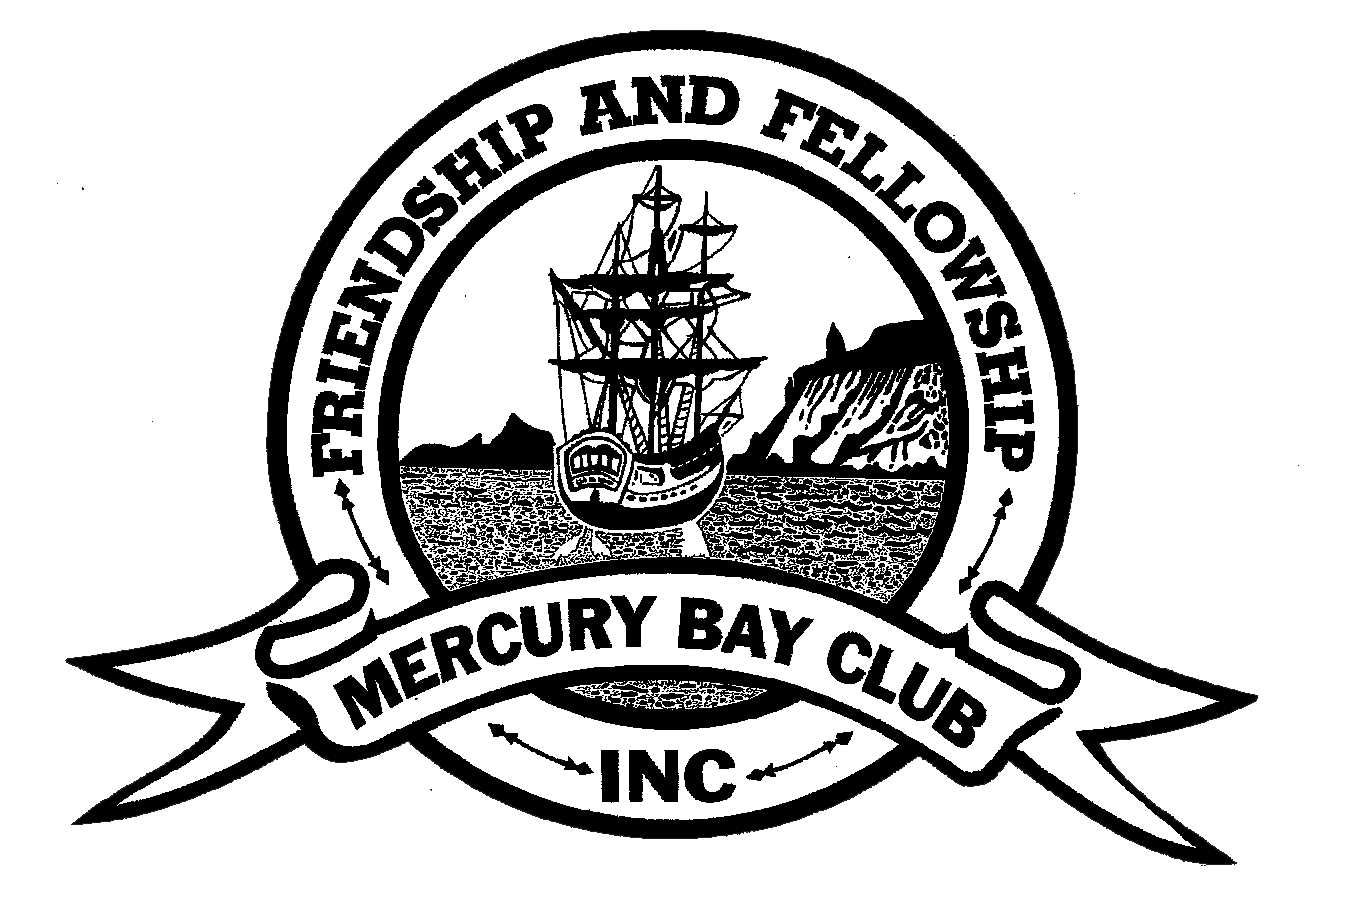 Mercury Bay Club